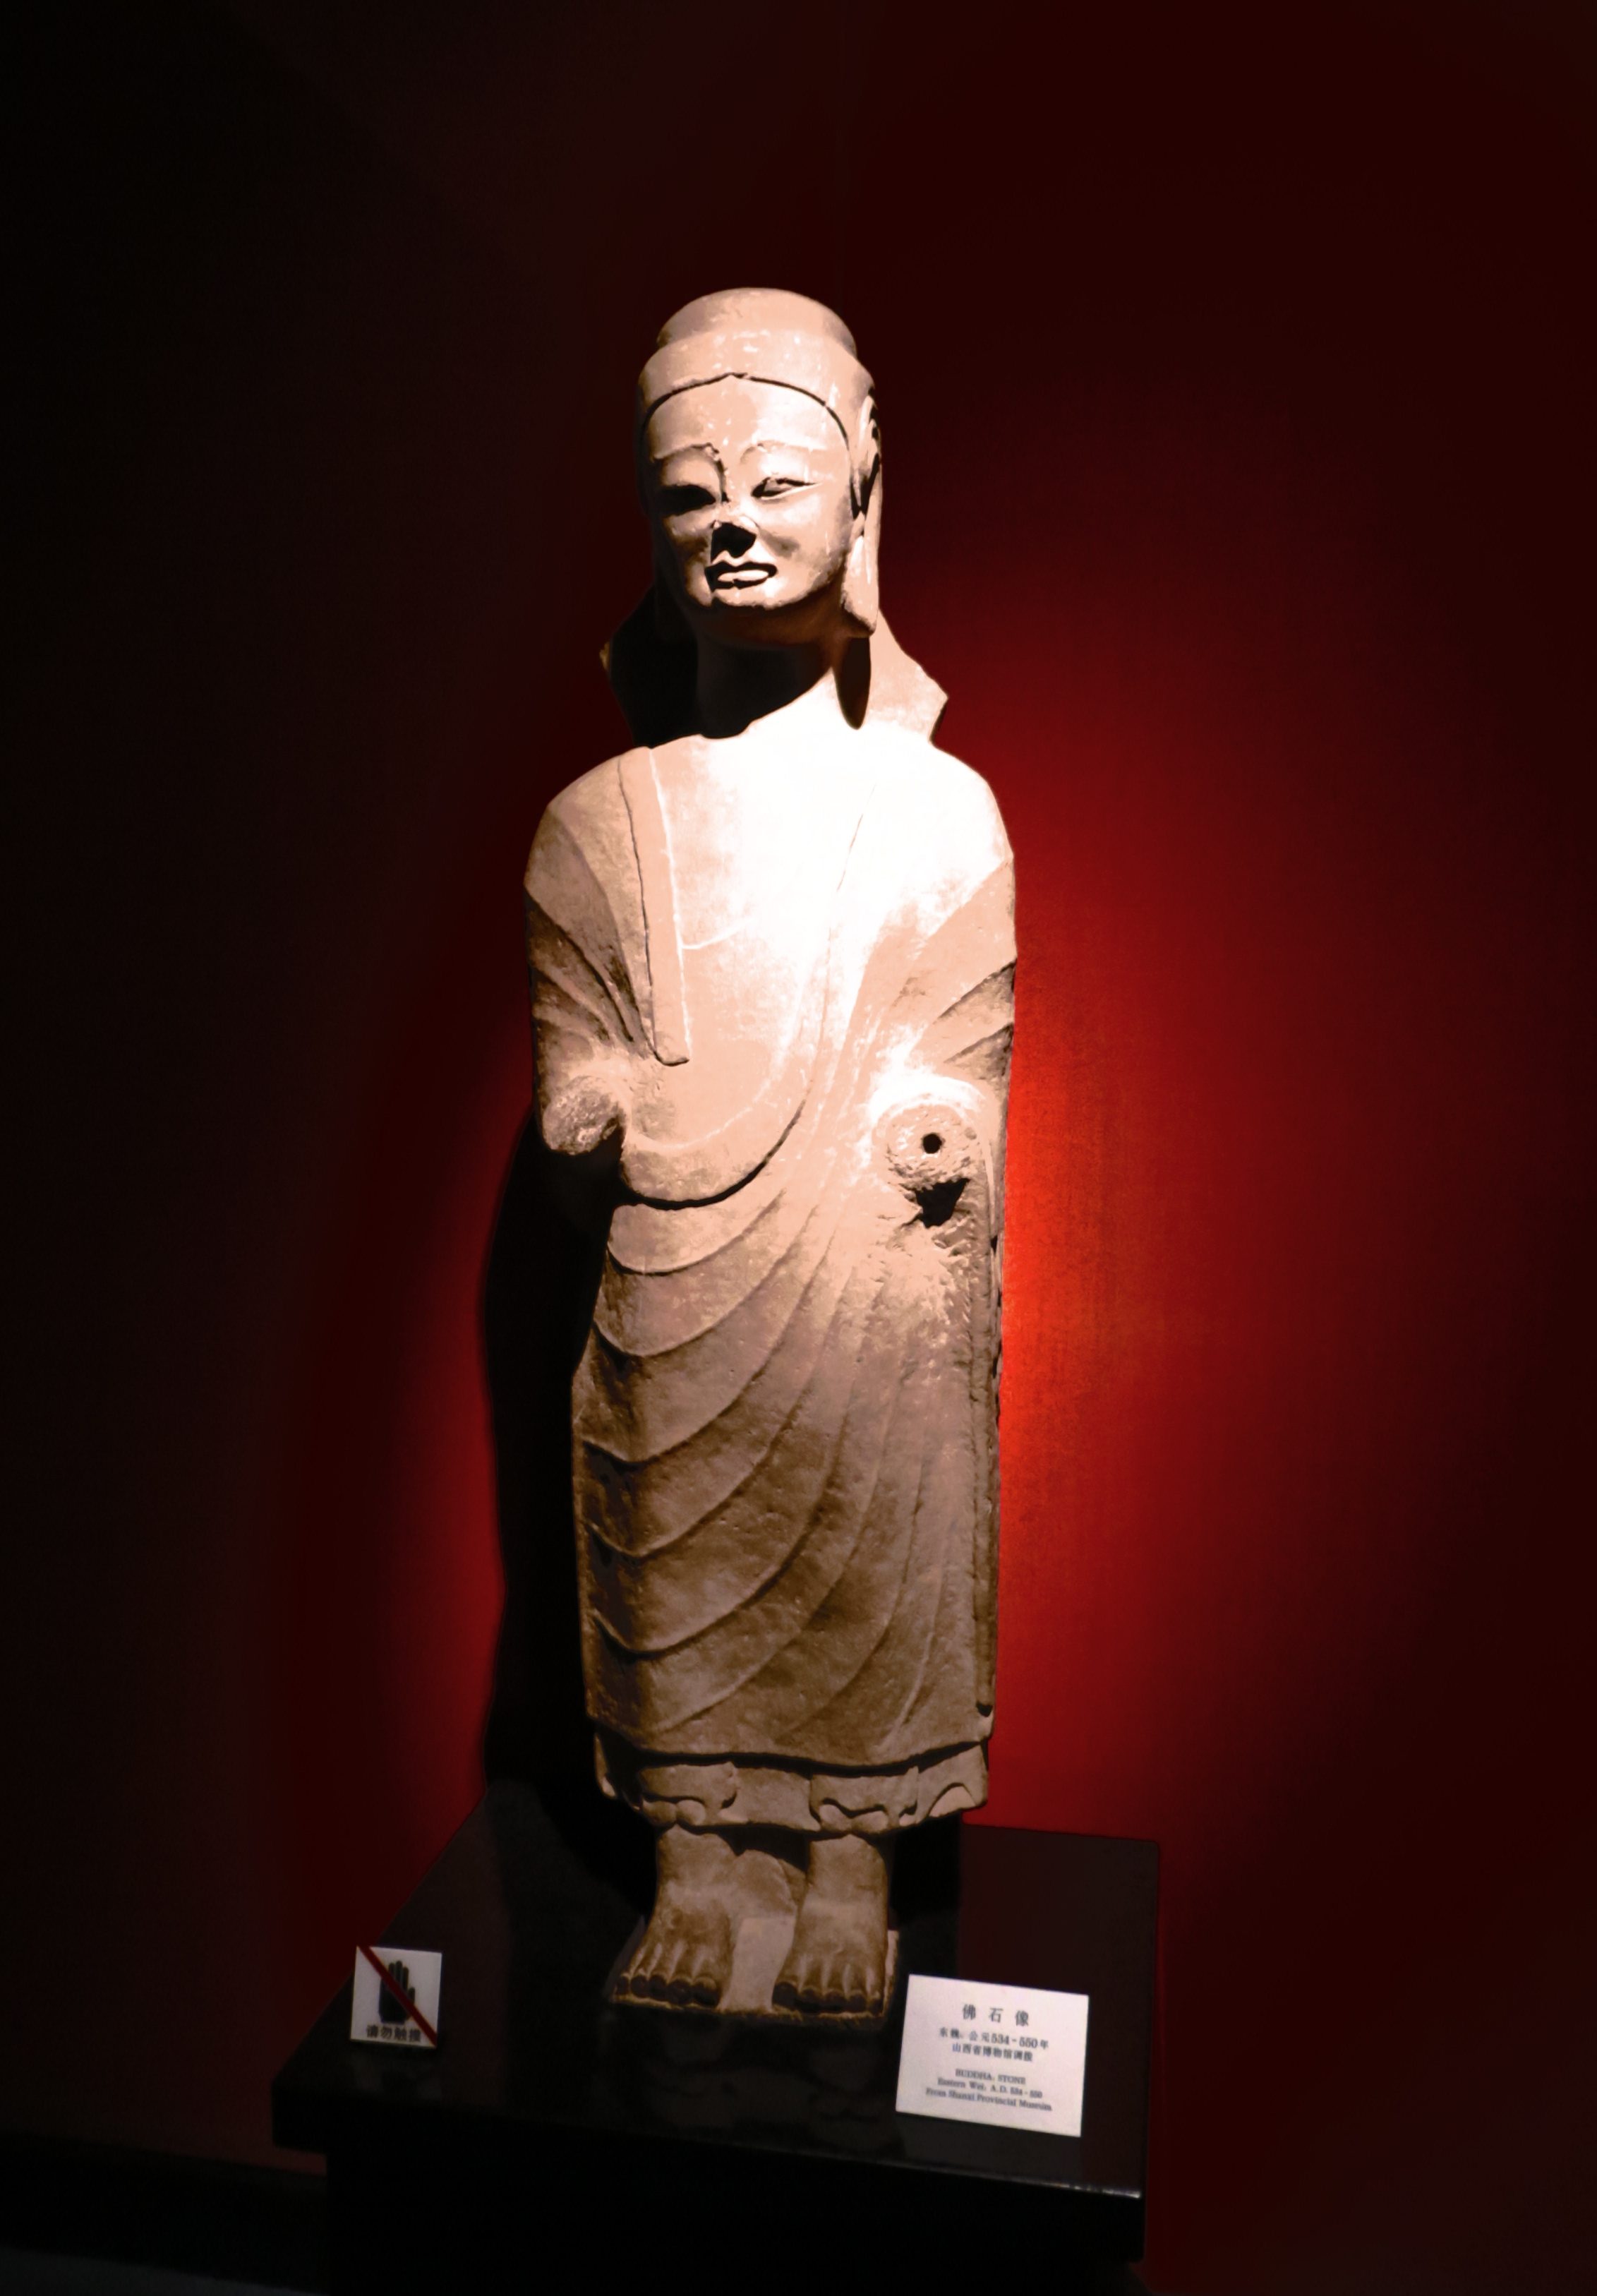 佛石像，东魏（534-550），山西博物馆调拨。佛像表情庄严安详，身披袈裟，轻薄而贴体。疏朗而平行的褶皱恰如其分地表现出衣物的柔和，并使造像在静谧中带上了隐约的动感